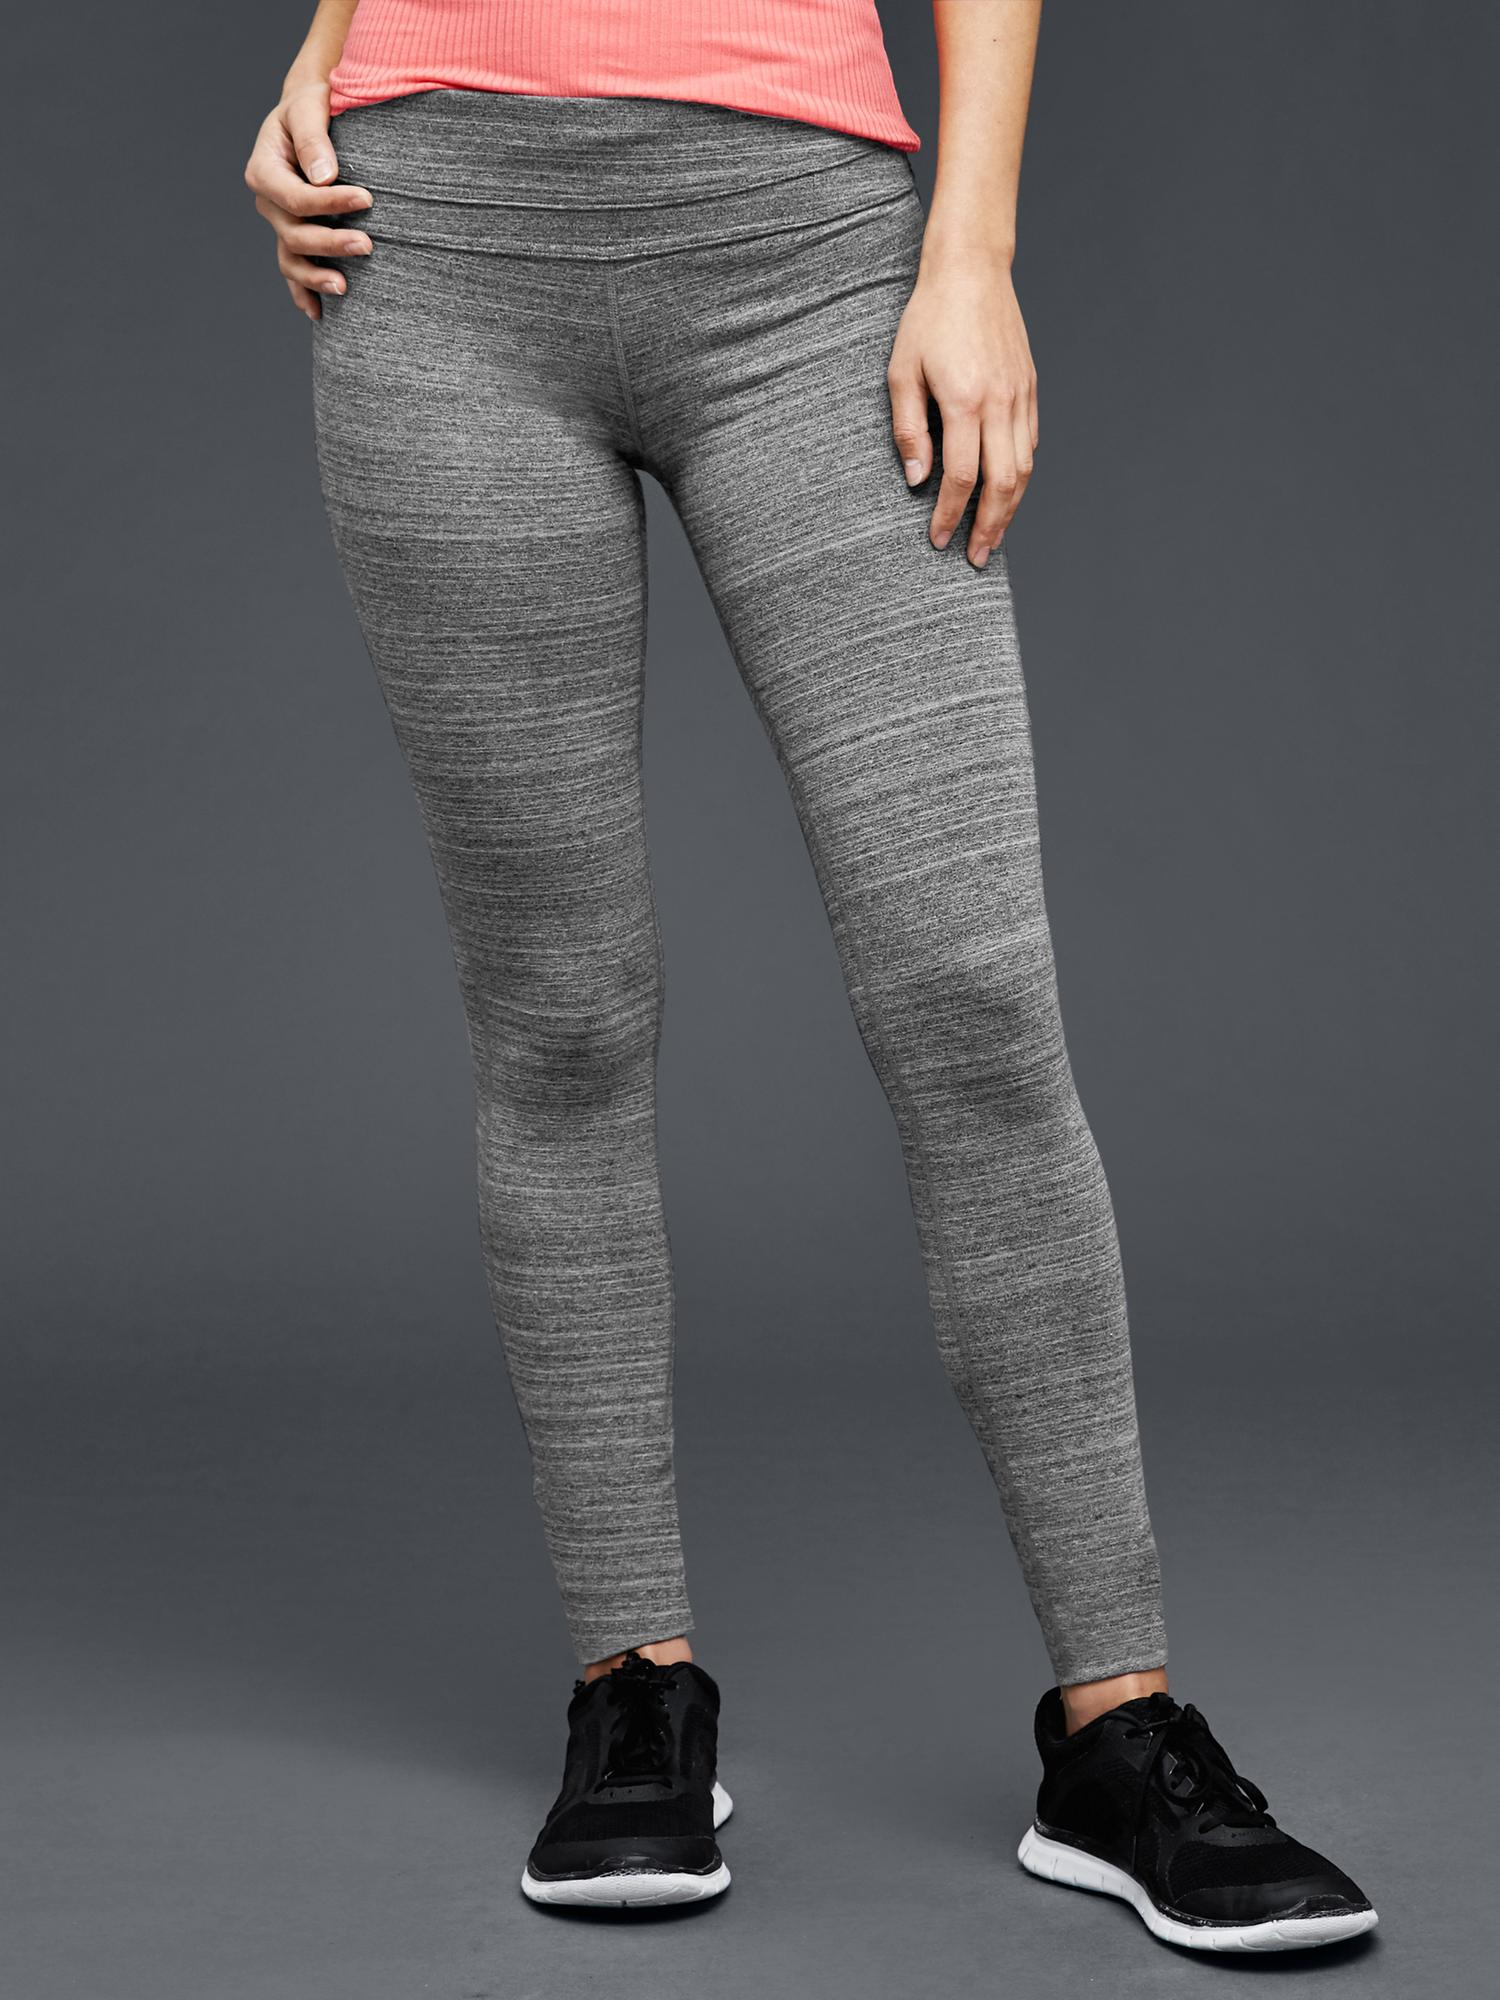 GAP, Pants & Jumpsuits, Gap Fit Sculpt Compression Textured Stripe Black  Leggings Size Xs